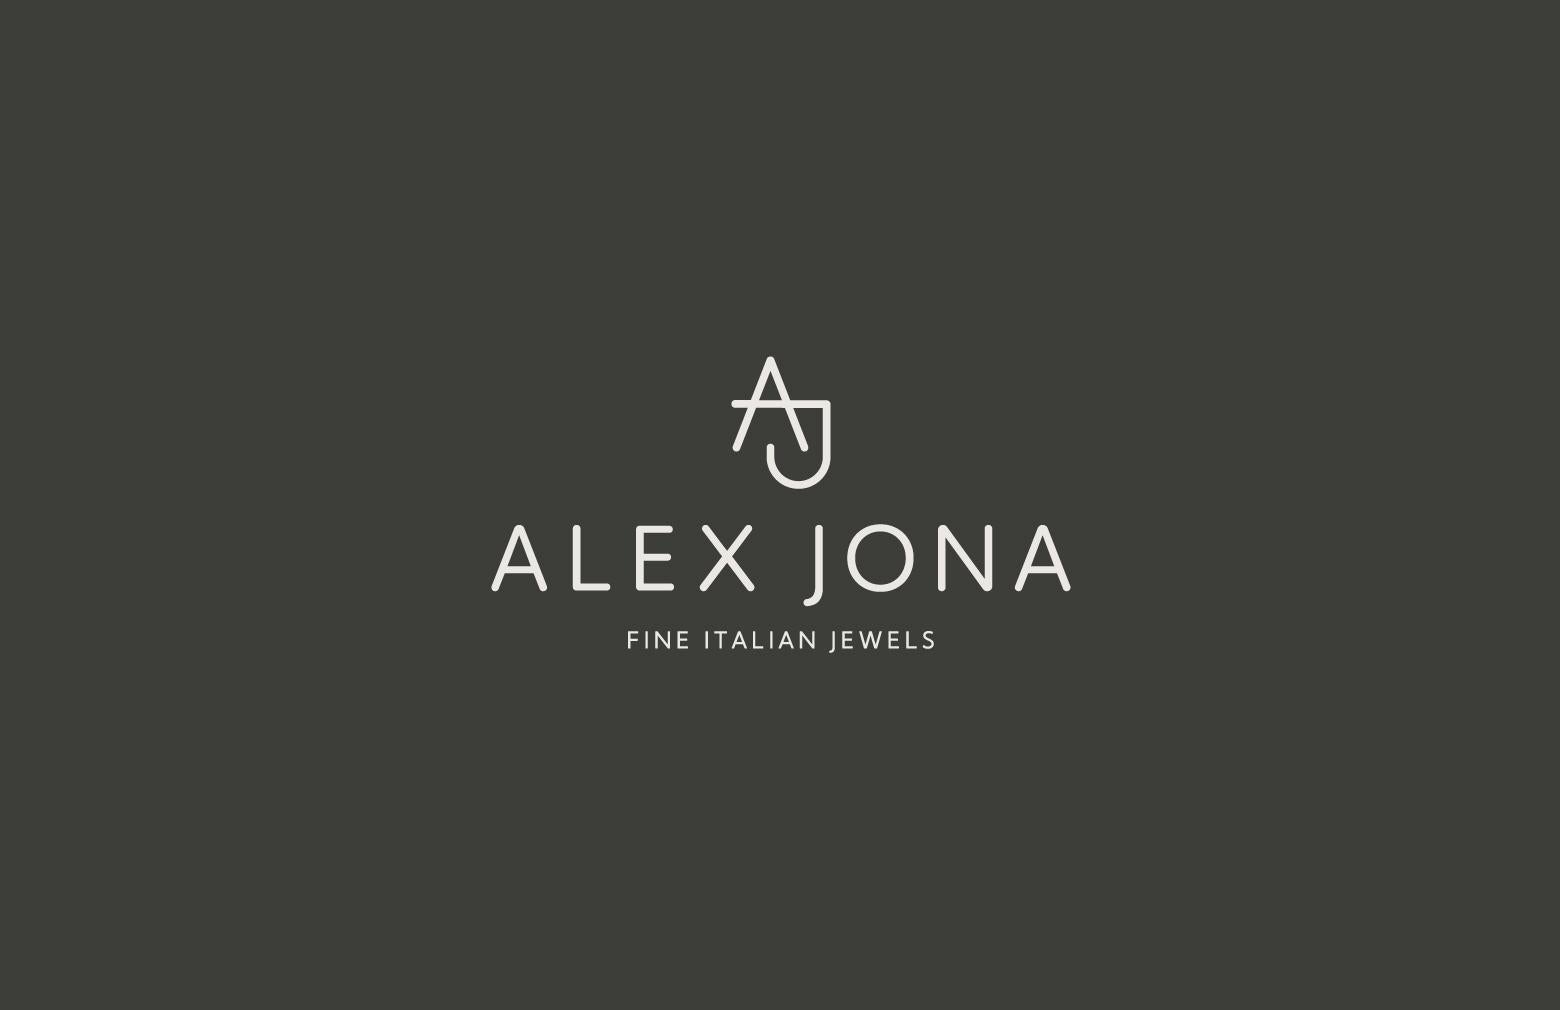 Alex Jona Black Spinel White Diamond 18 Karat Rose Gold Hoop Earrings For Sale 7